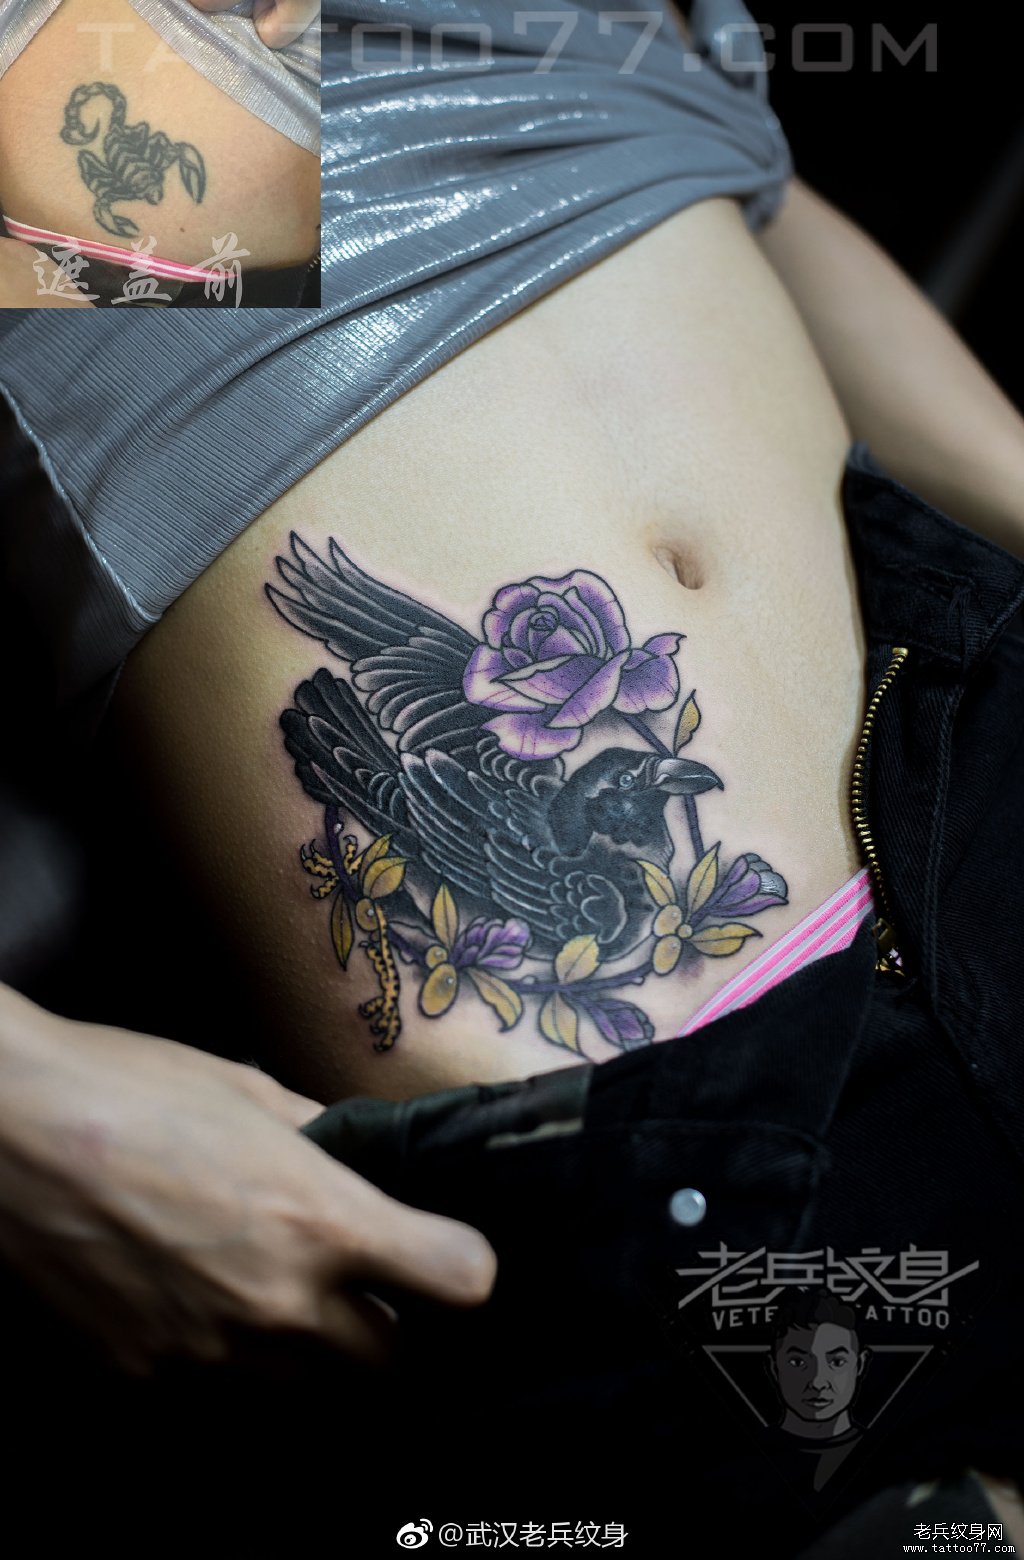 腹部鸟玫瑰花纹身图案作品遮盖旧纹身